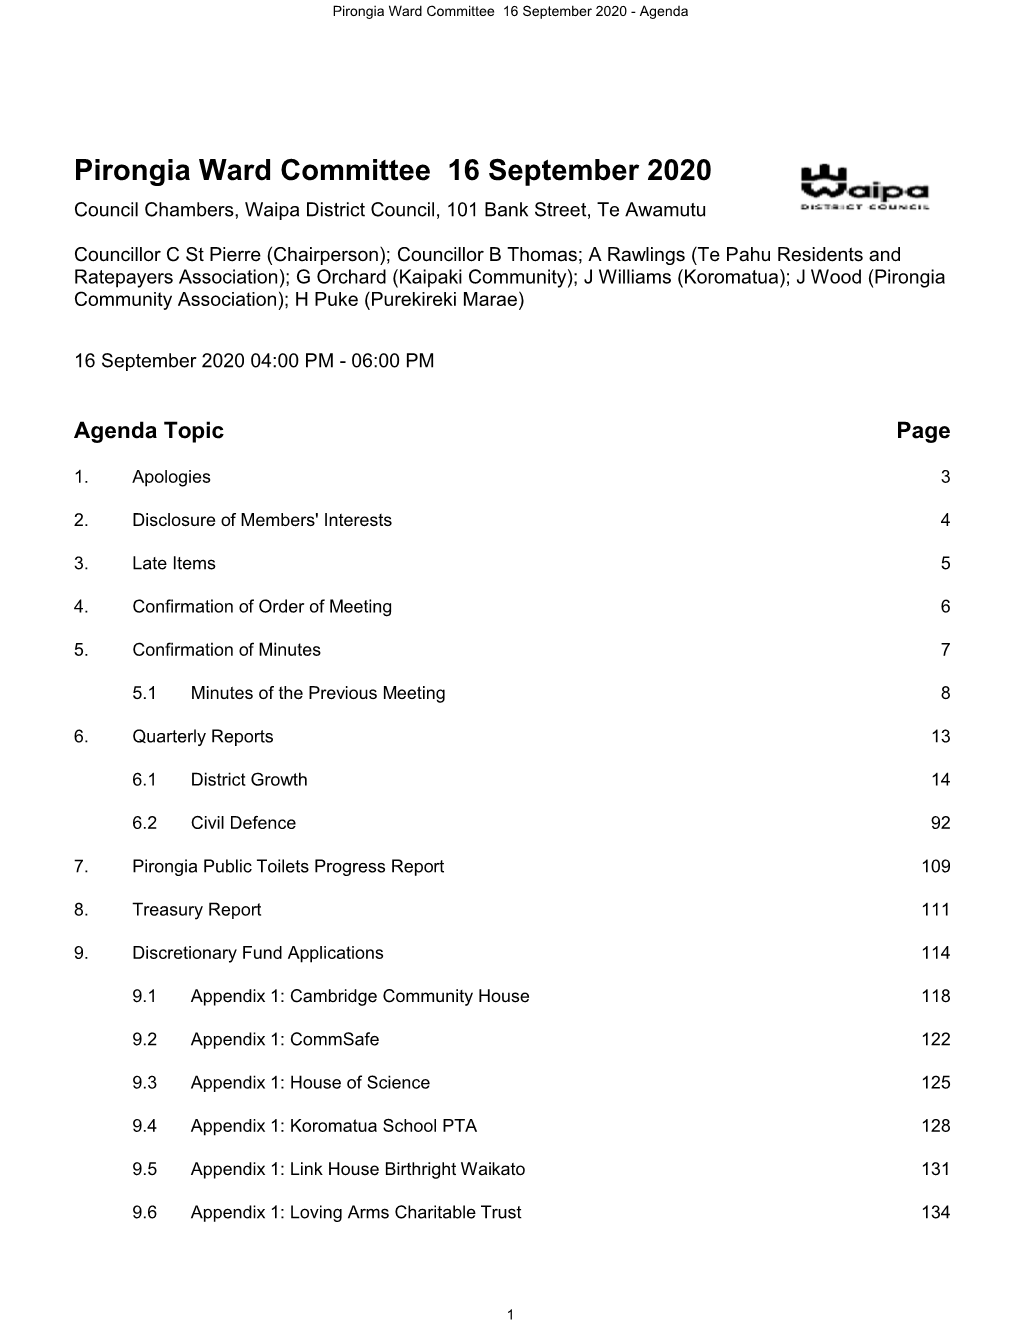 Pirongia Ward Committee Agenda 16 September 2020